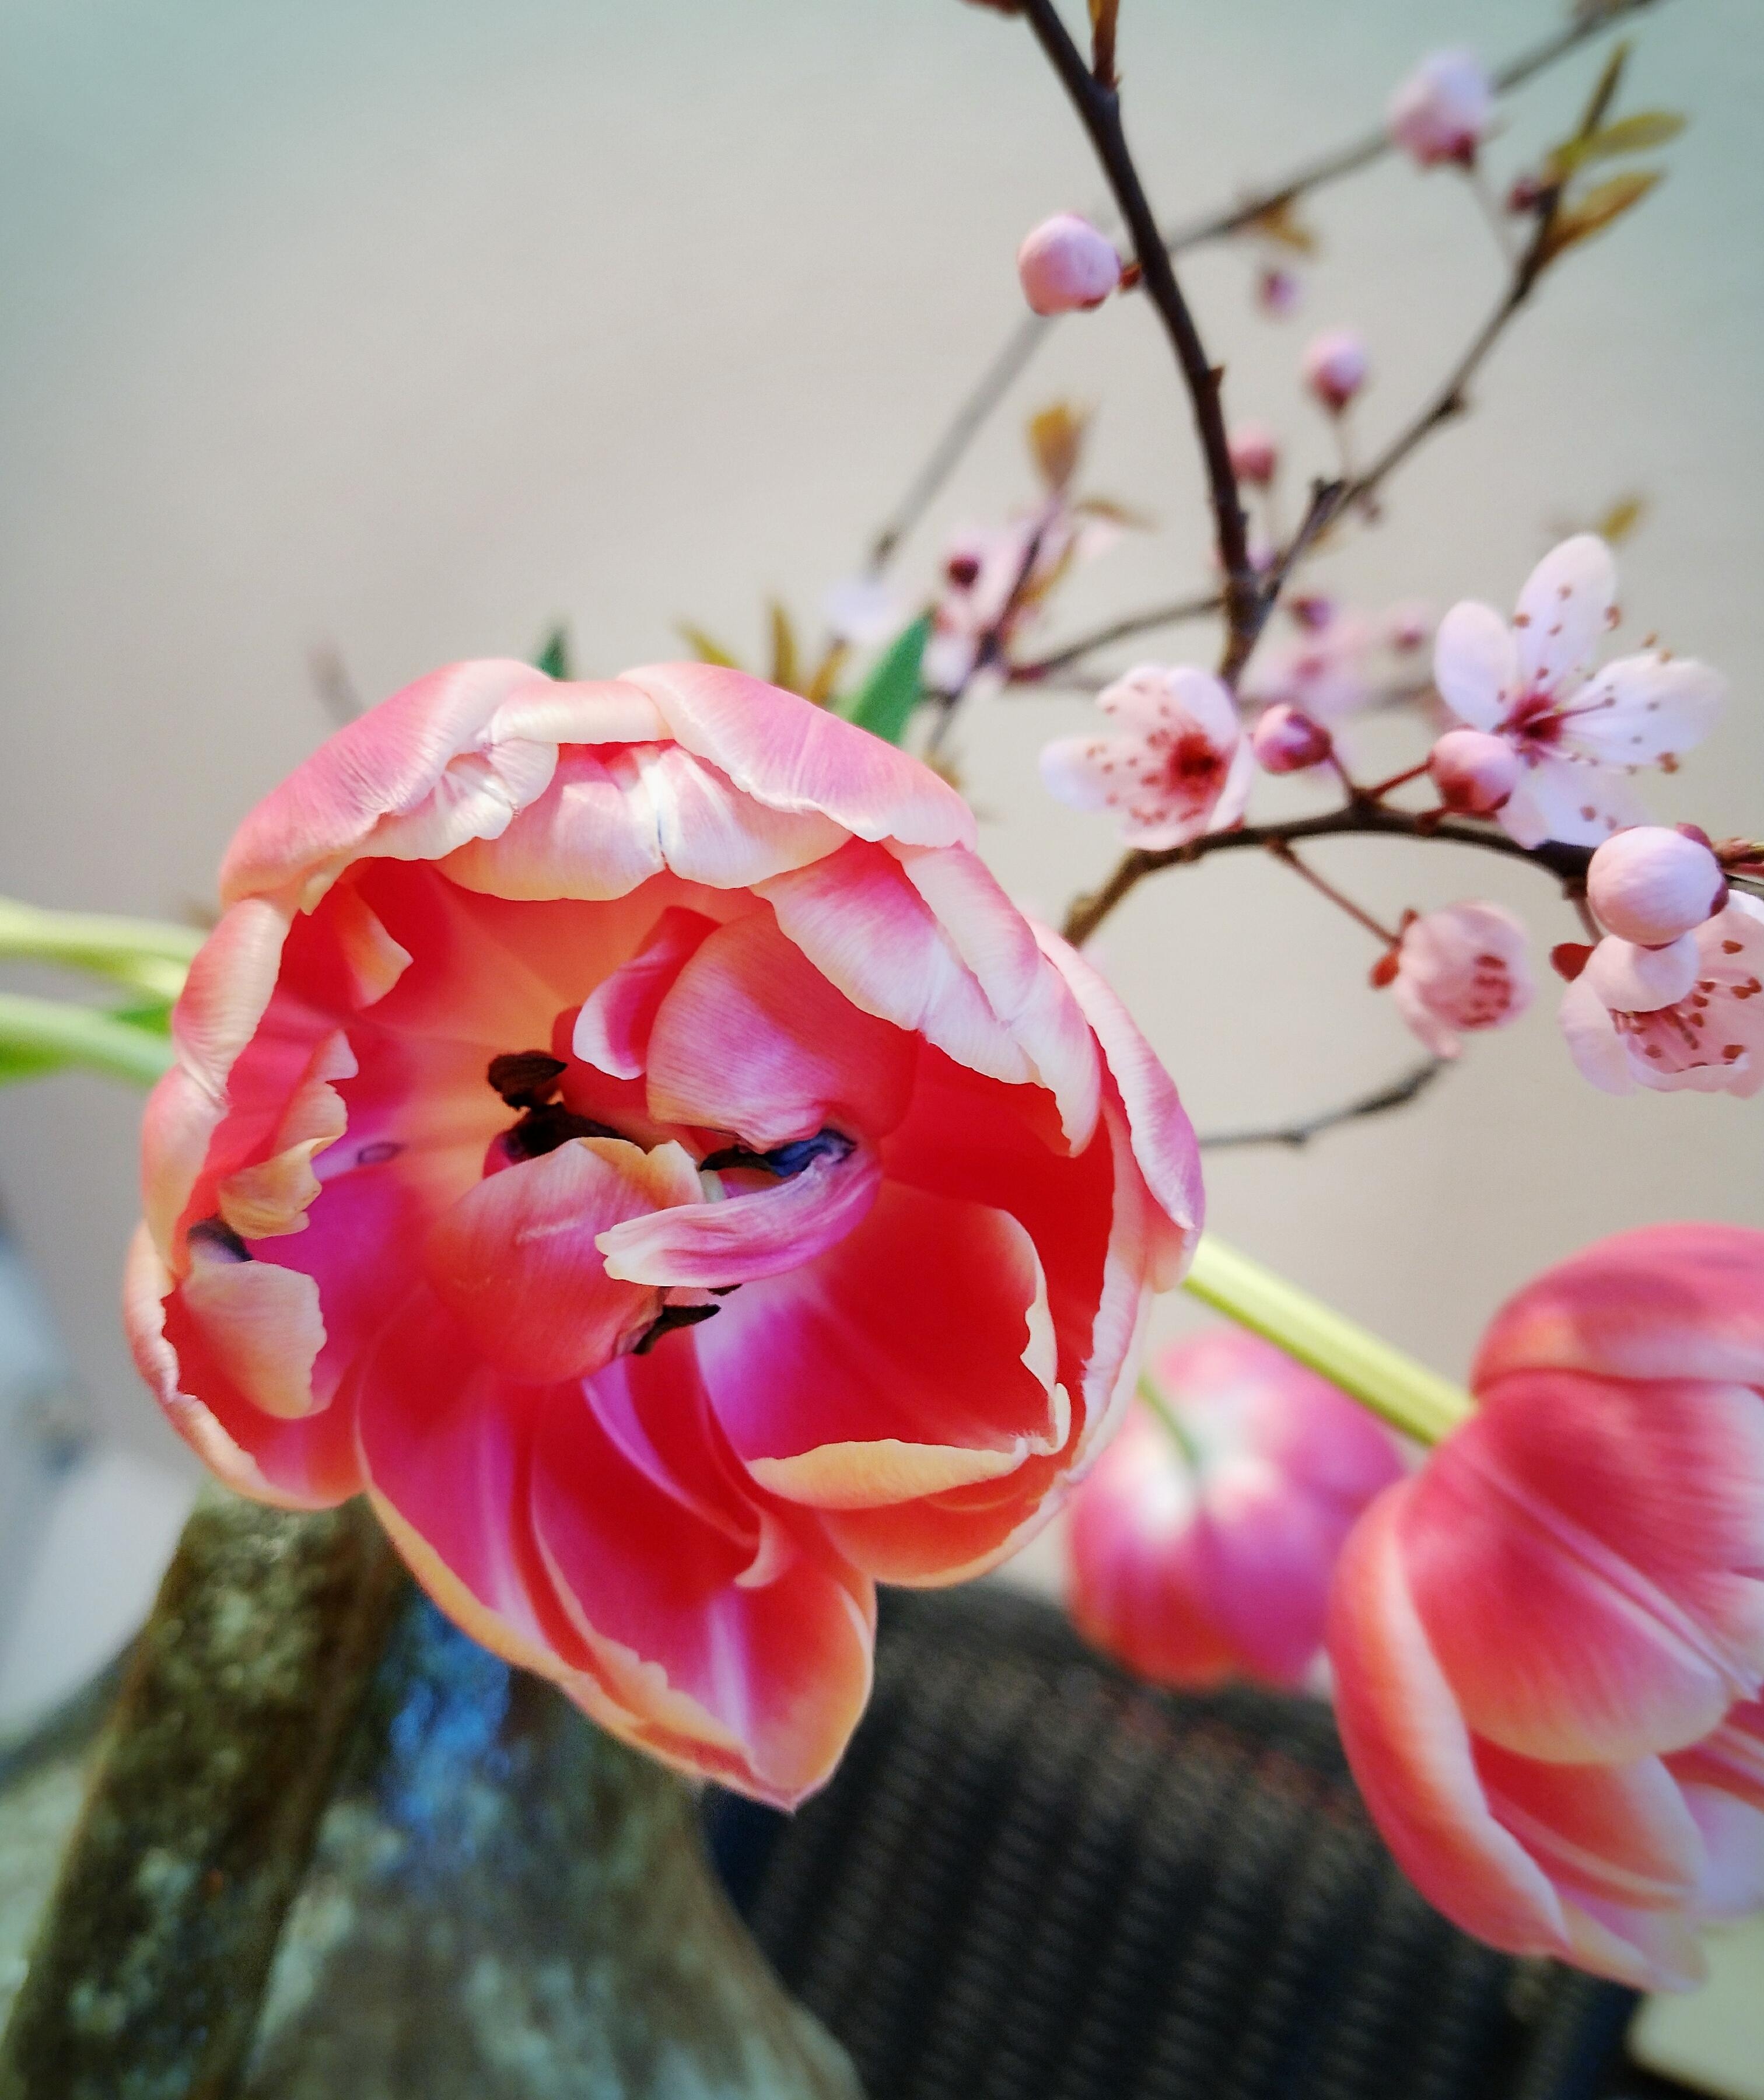 #frischeblumen #tulpen #frühling #blumenliebe